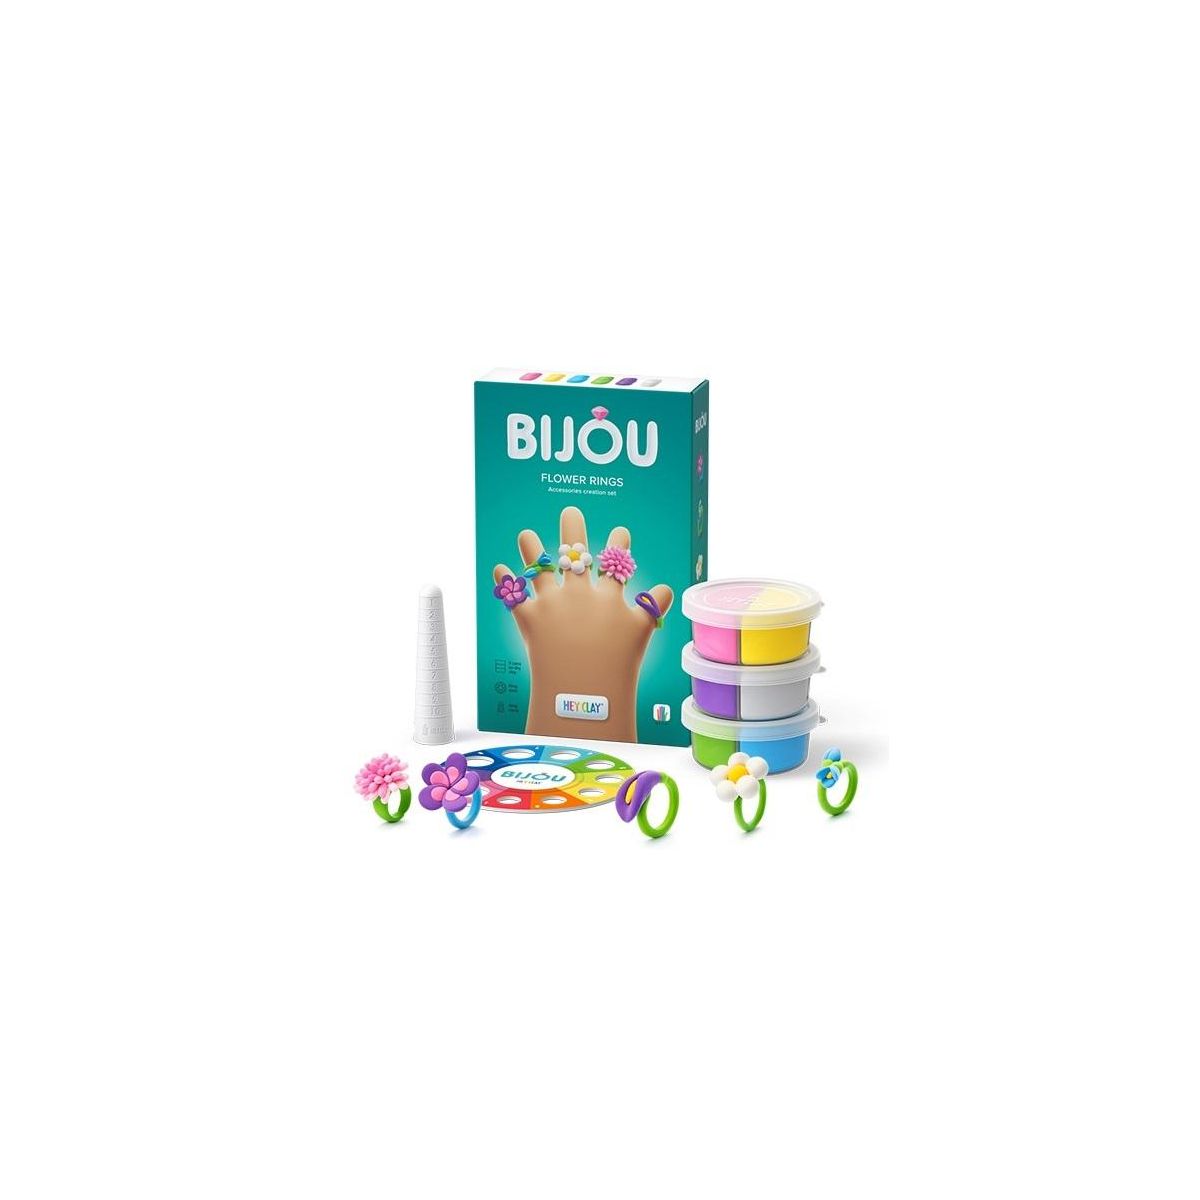 Masa plastyczna dla dzieci Hey Clay Bijou Flower rings mix Tm Toys (HLC31001CEE)